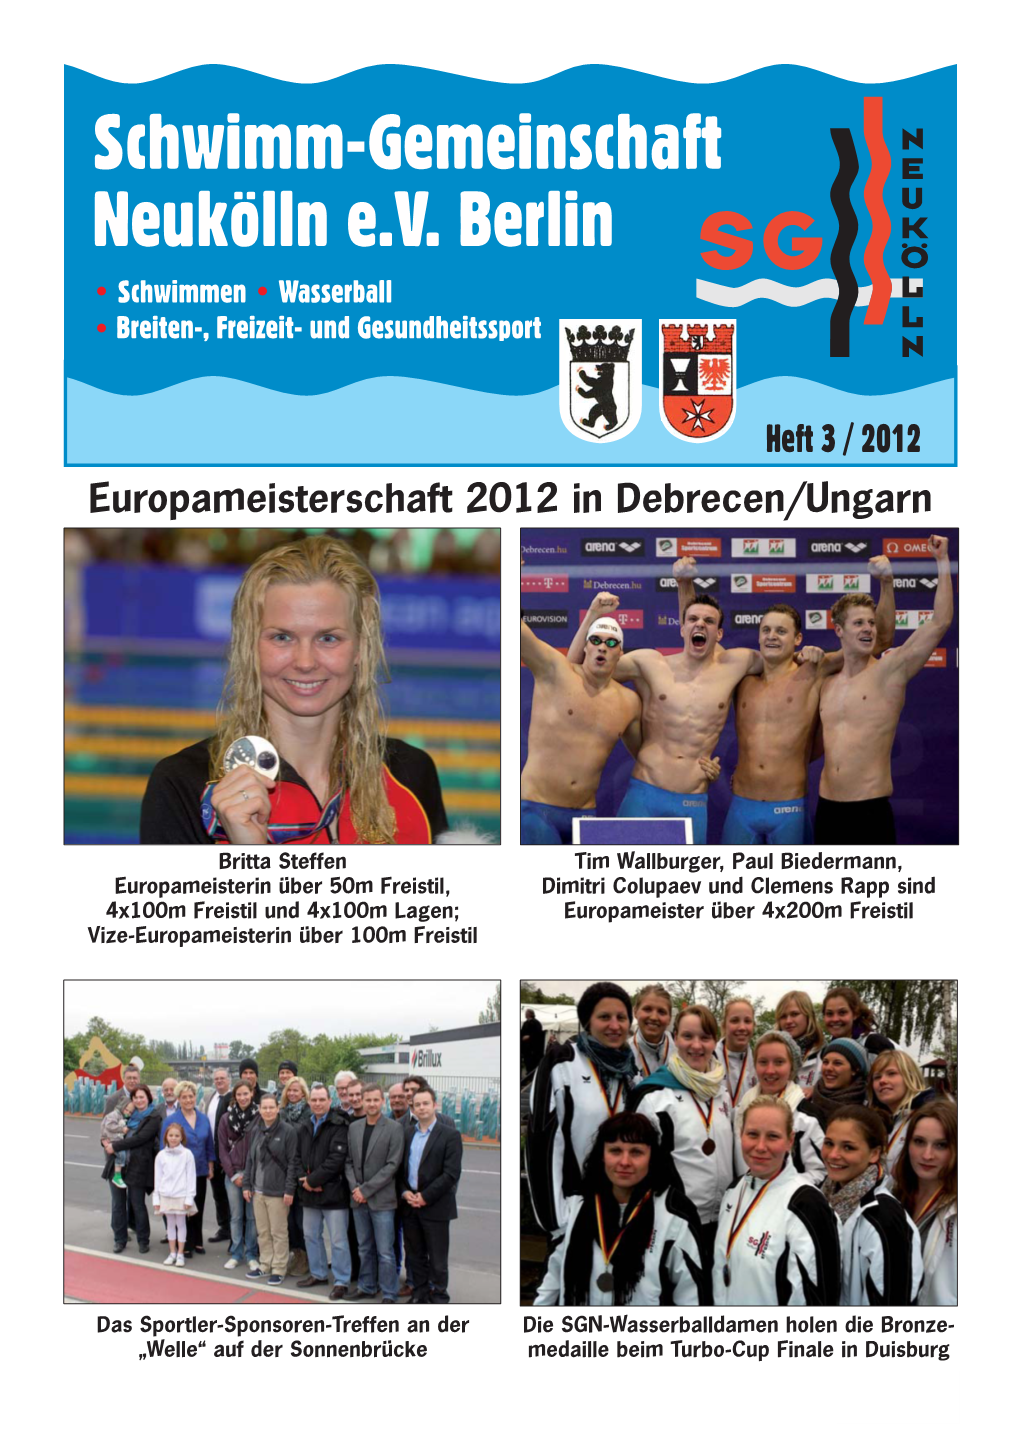 Heft 3 / 2012 Europameisterschaft 2012 in Debrecen/Ungarn